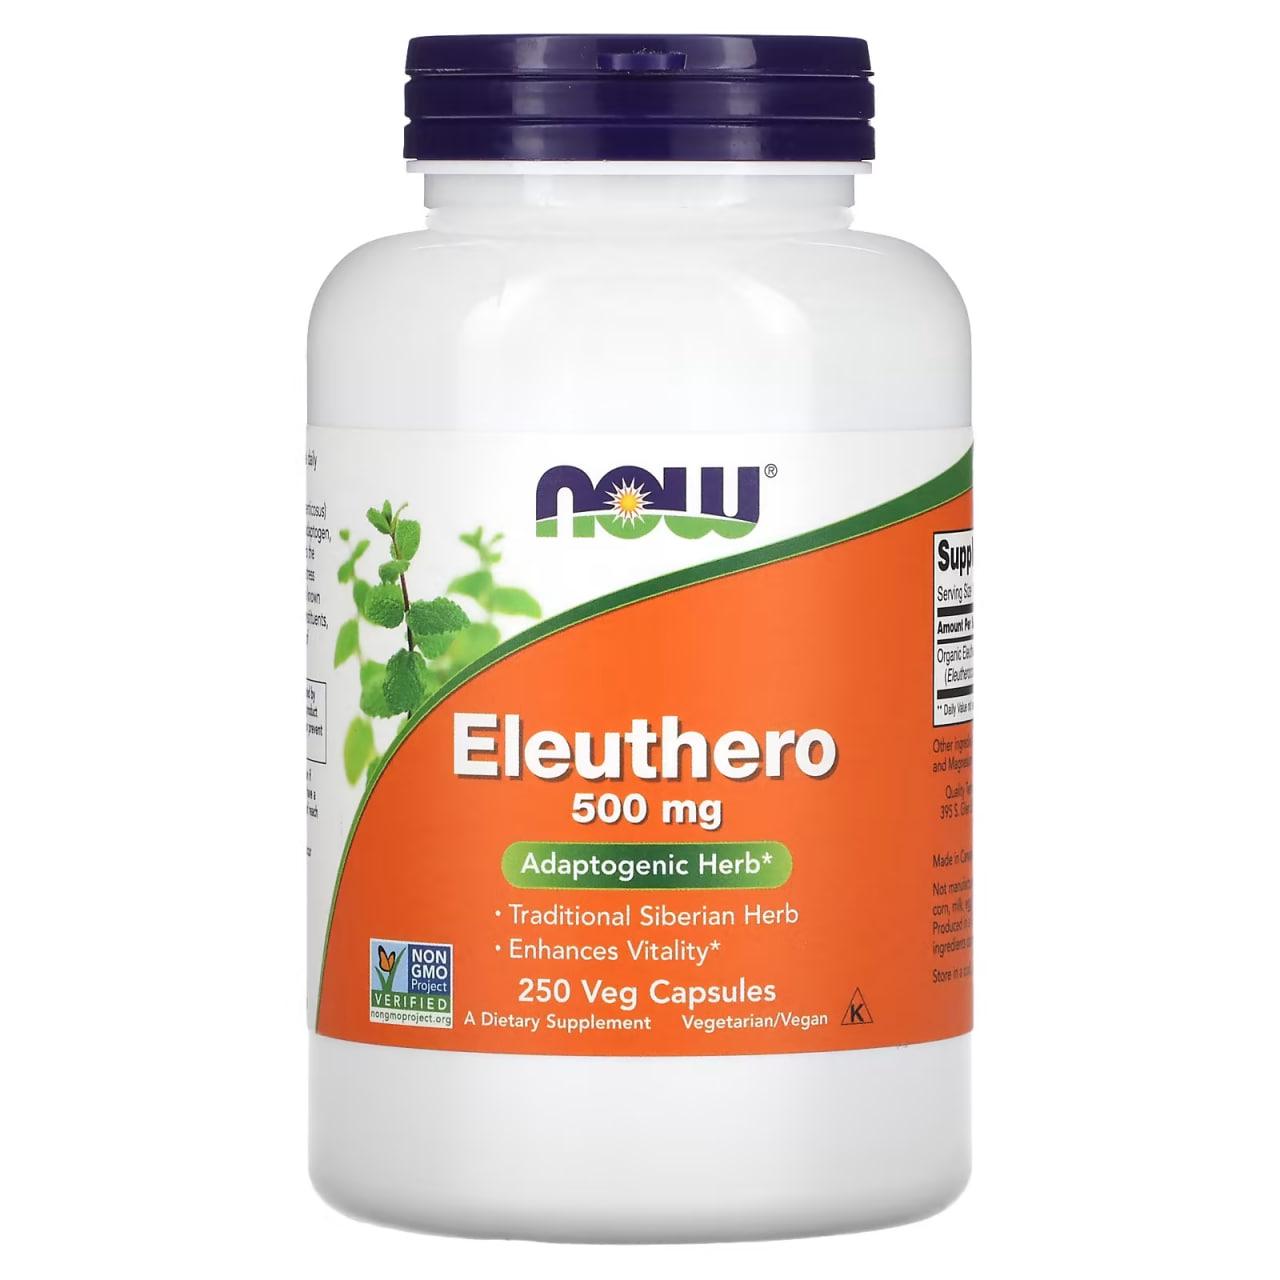 Харчова добавка NOW Foods Eleuthero 500 mg 250 Сaps,  мл, Now. Спец препараты. 